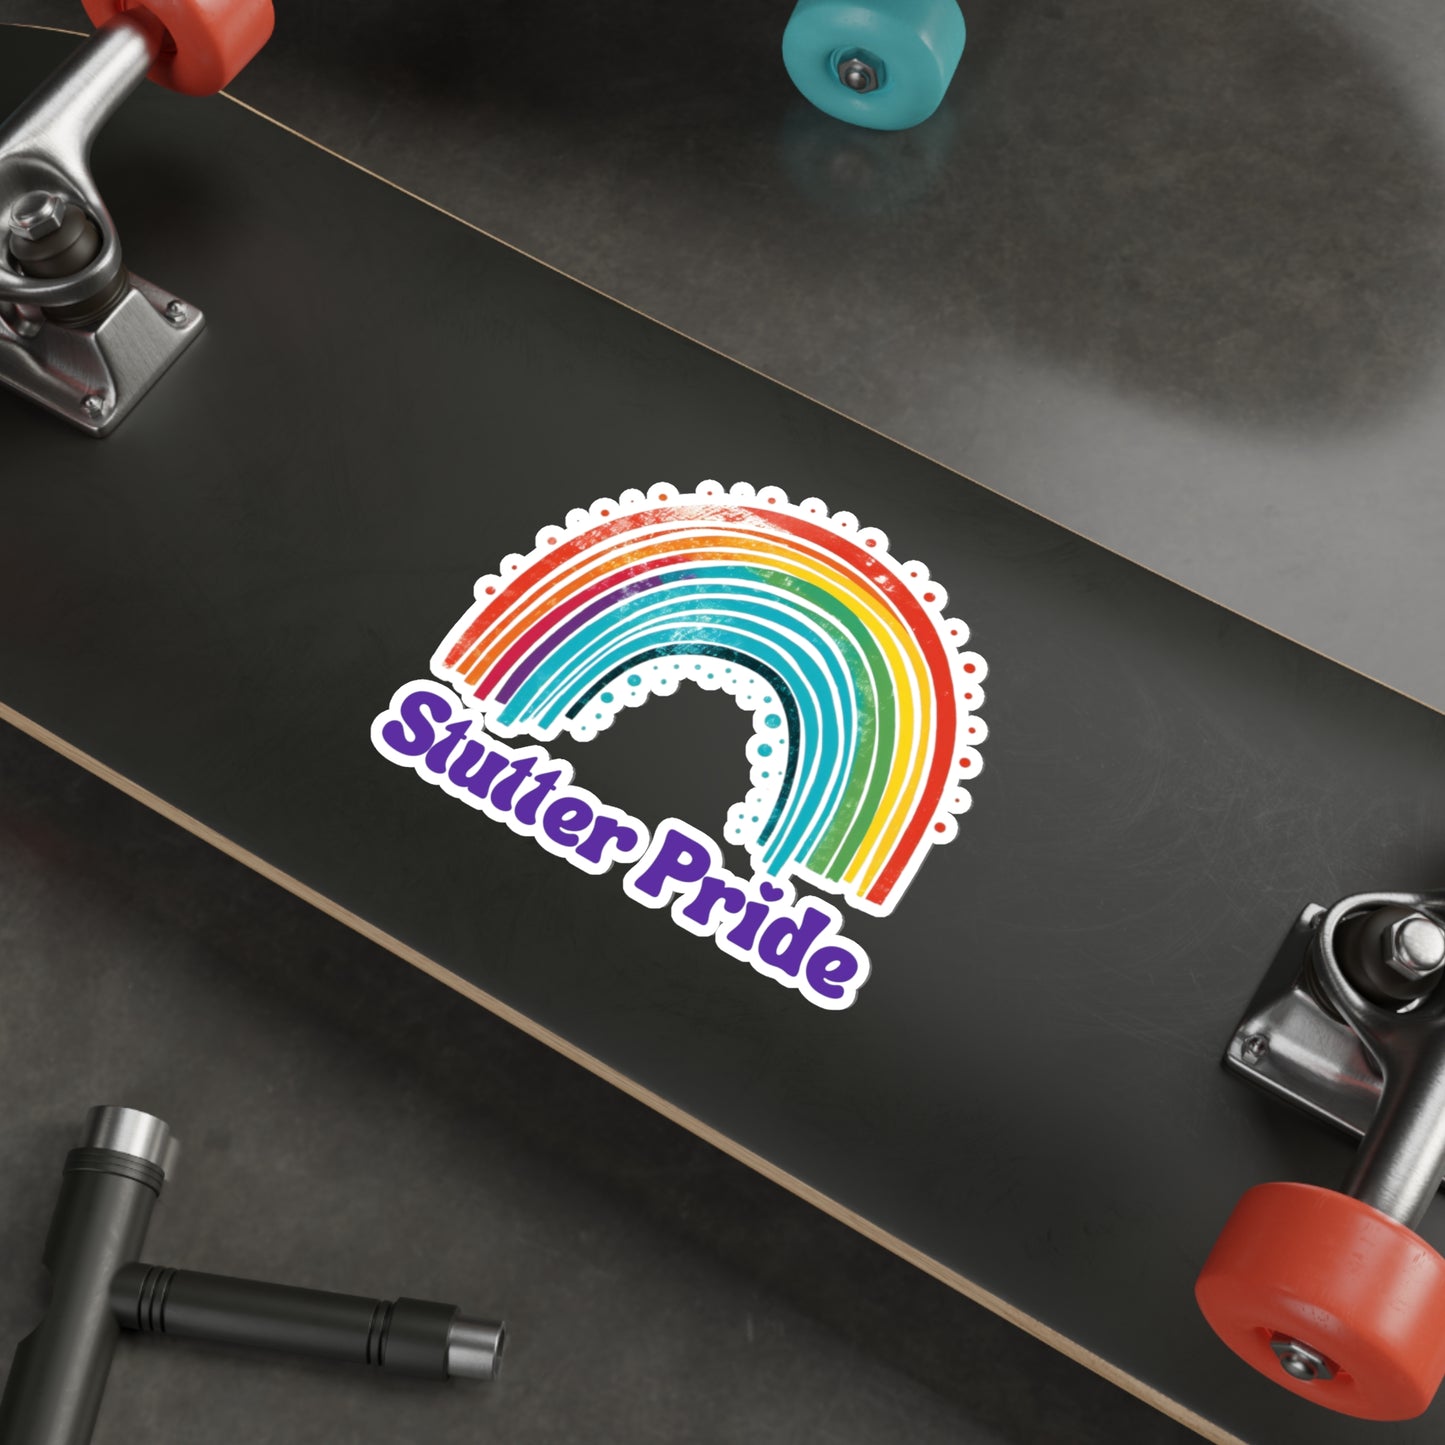 Stutter Pride Rainbow Die-Cut Vinyl Matte Sticker